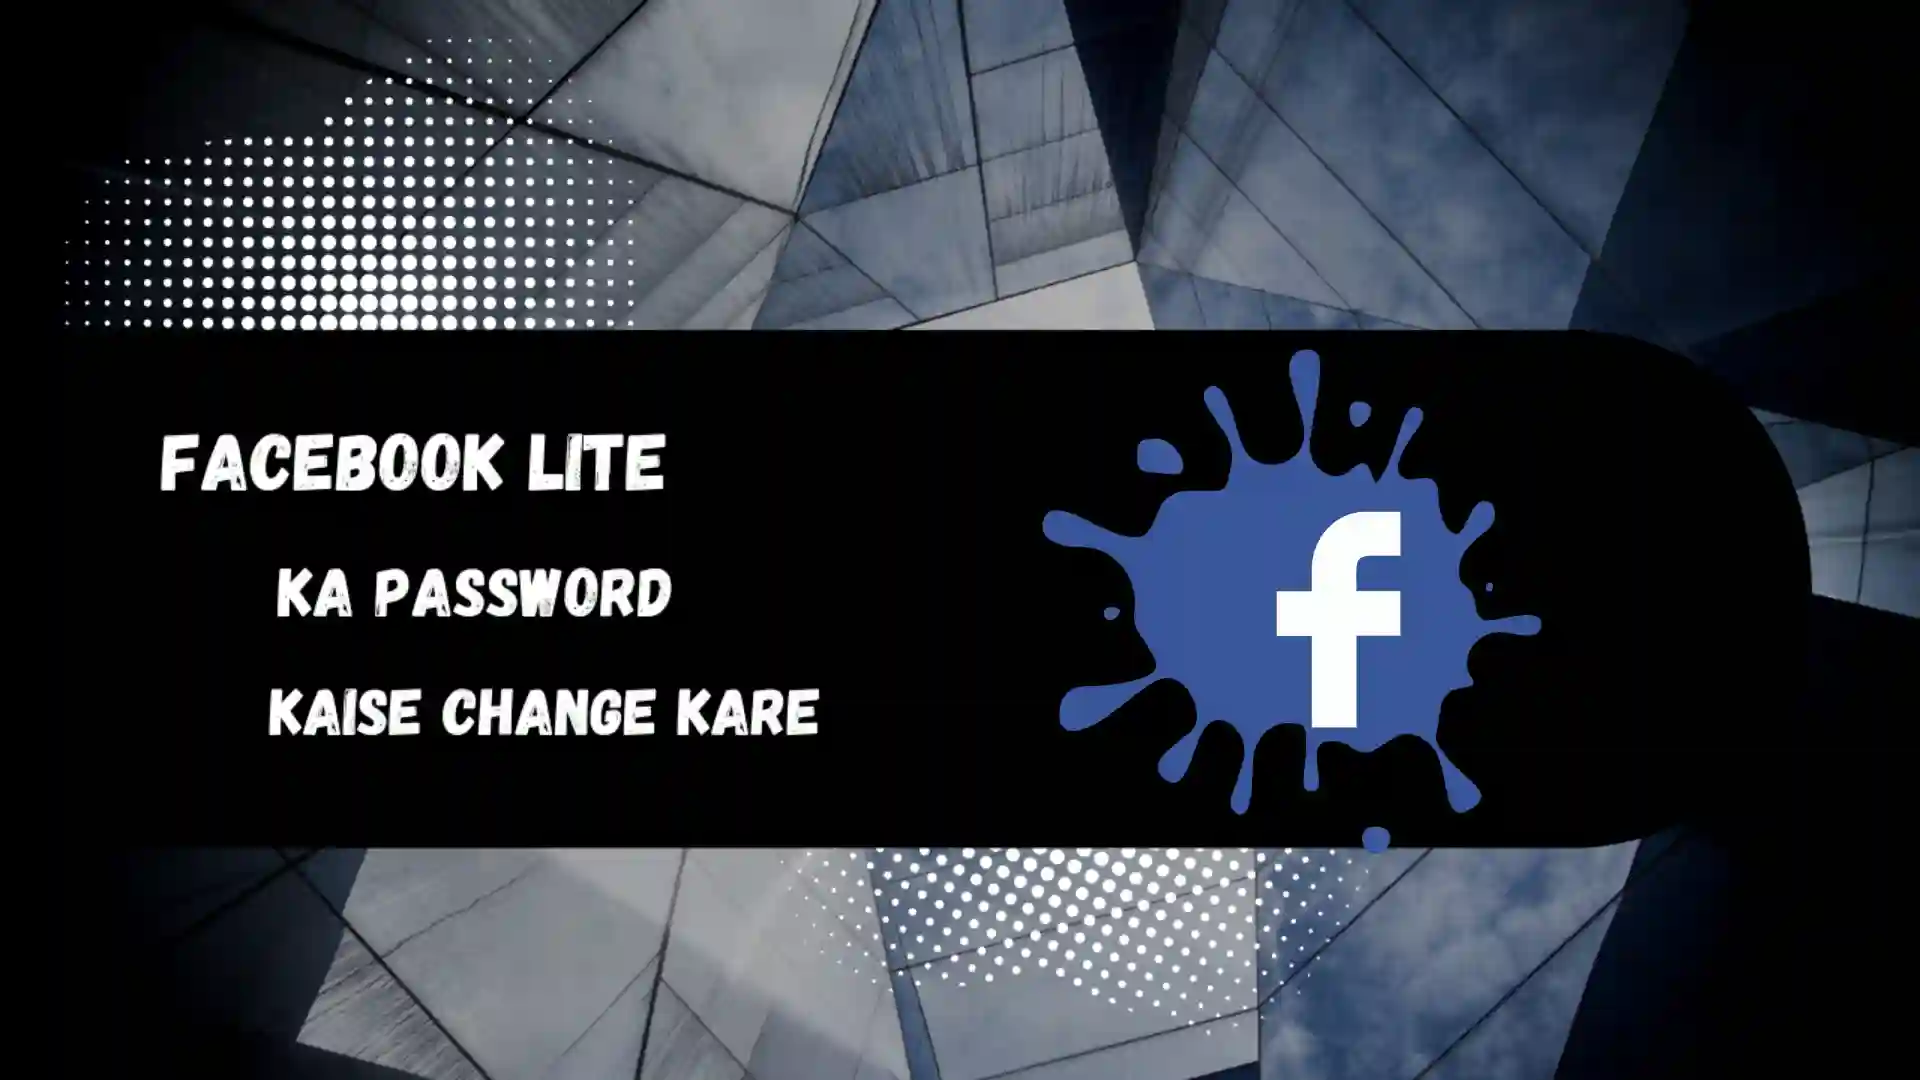 Facebook-lite-ka-password-kaise-change-kare